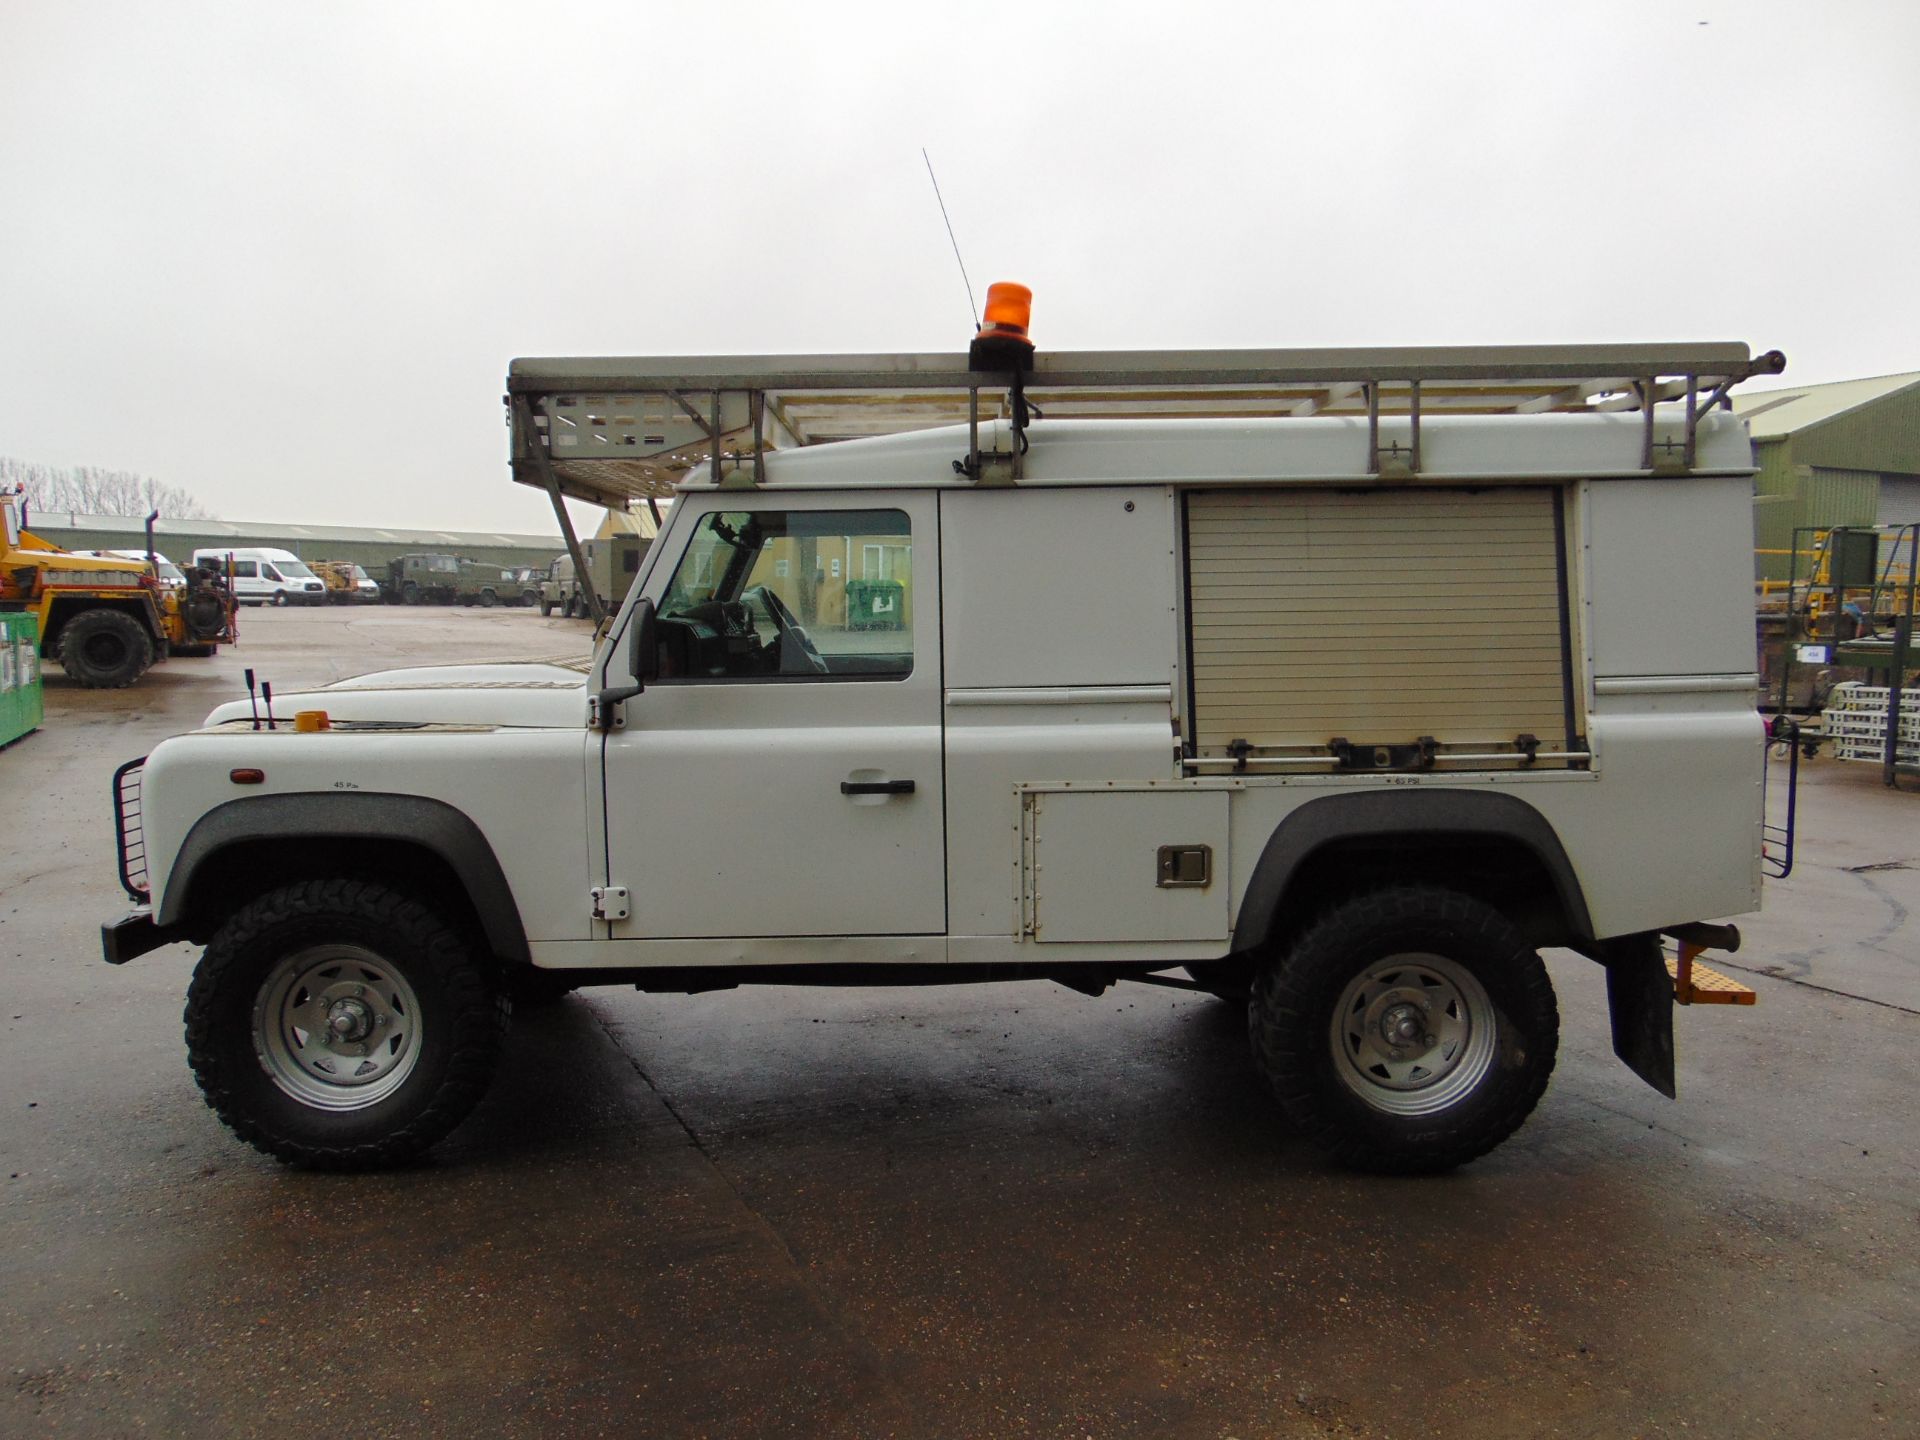 2011 Land Rover Defender 110 Puma hardtop 4x4 Utility vehicle (mobile workshop) - Image 4 of 31